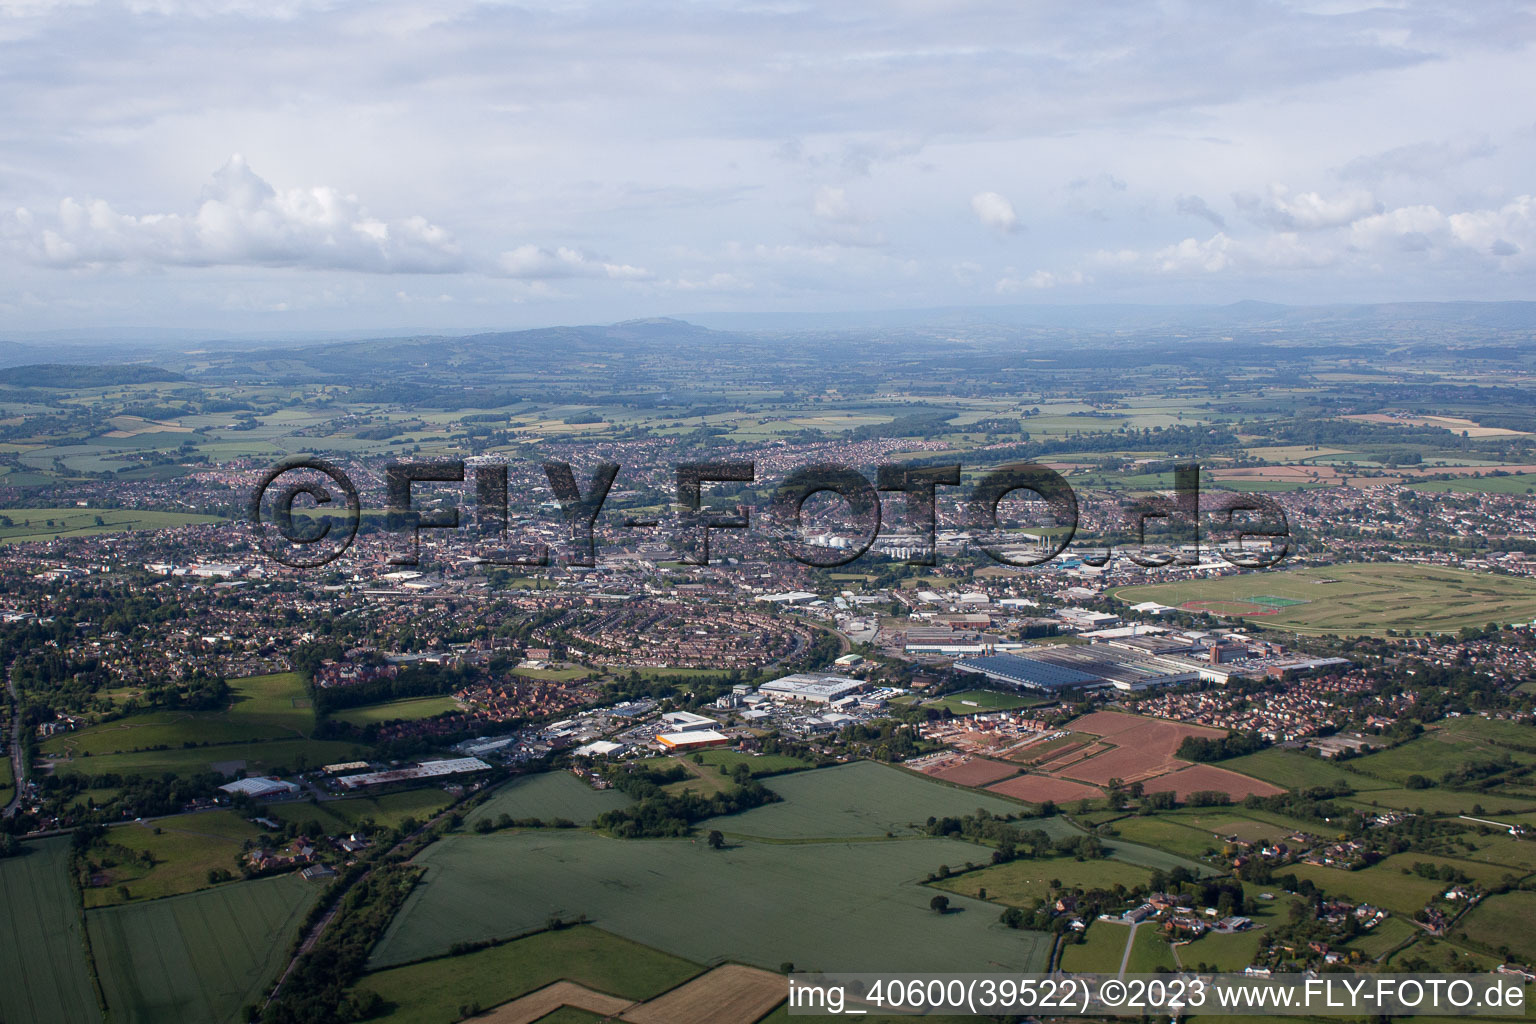 Vue aérienne de 2. Possibilité de ravitaillement avec aire d'atterrissage sur le terrain de sport/golf à Sutton dans le département Angleterre, Grande Bretagne